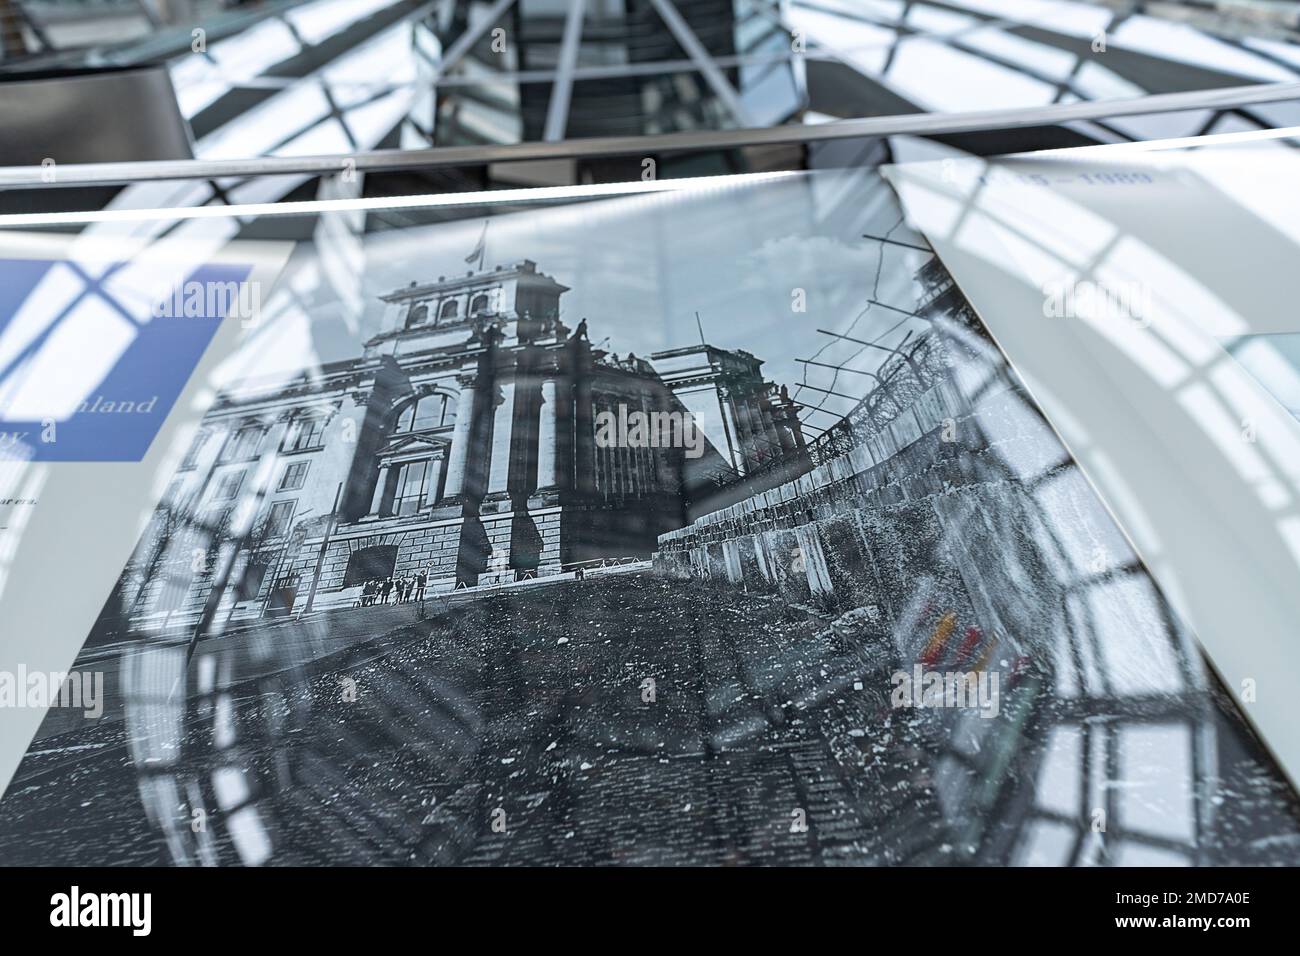 In der Bundestag-Kuppel. Reichstagsgebäude in Berlin. Alte historische Fotos und Zeitungsausstellung im Dom des deutschen parlaments. Stockfoto